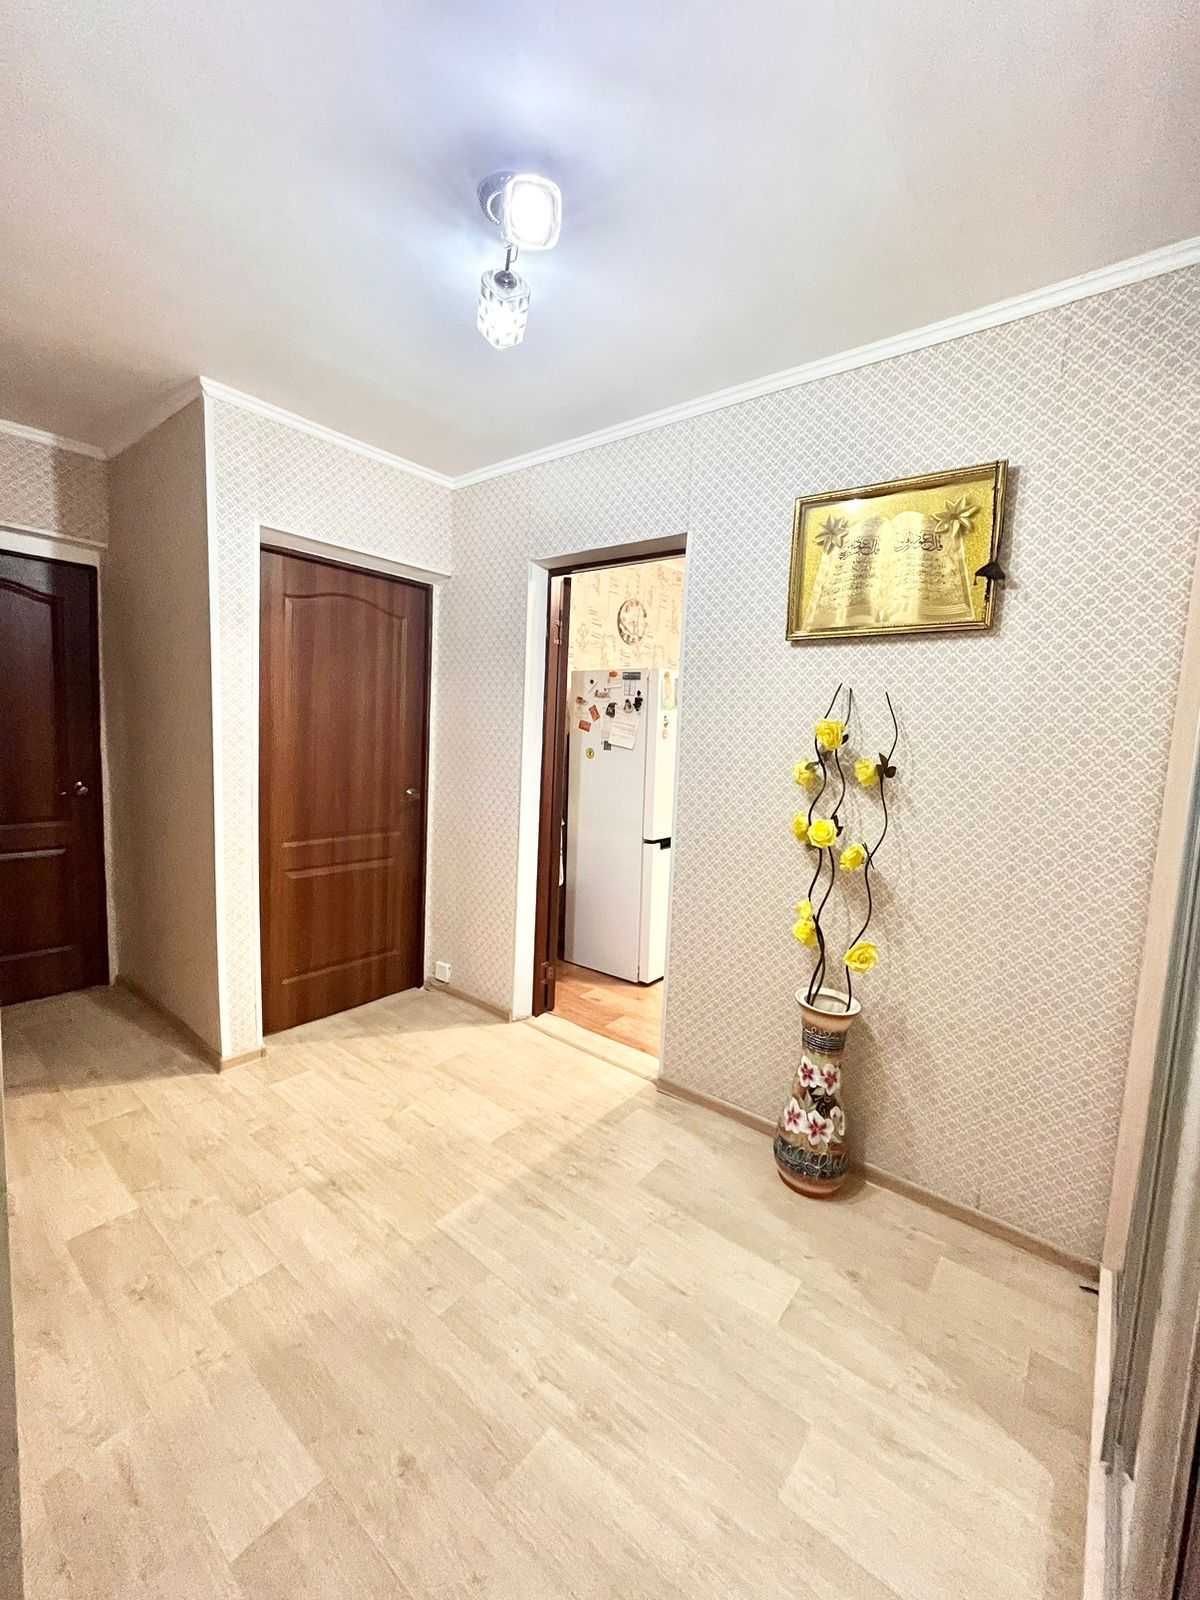 Продается 2-х комнатная квартира район Петровского